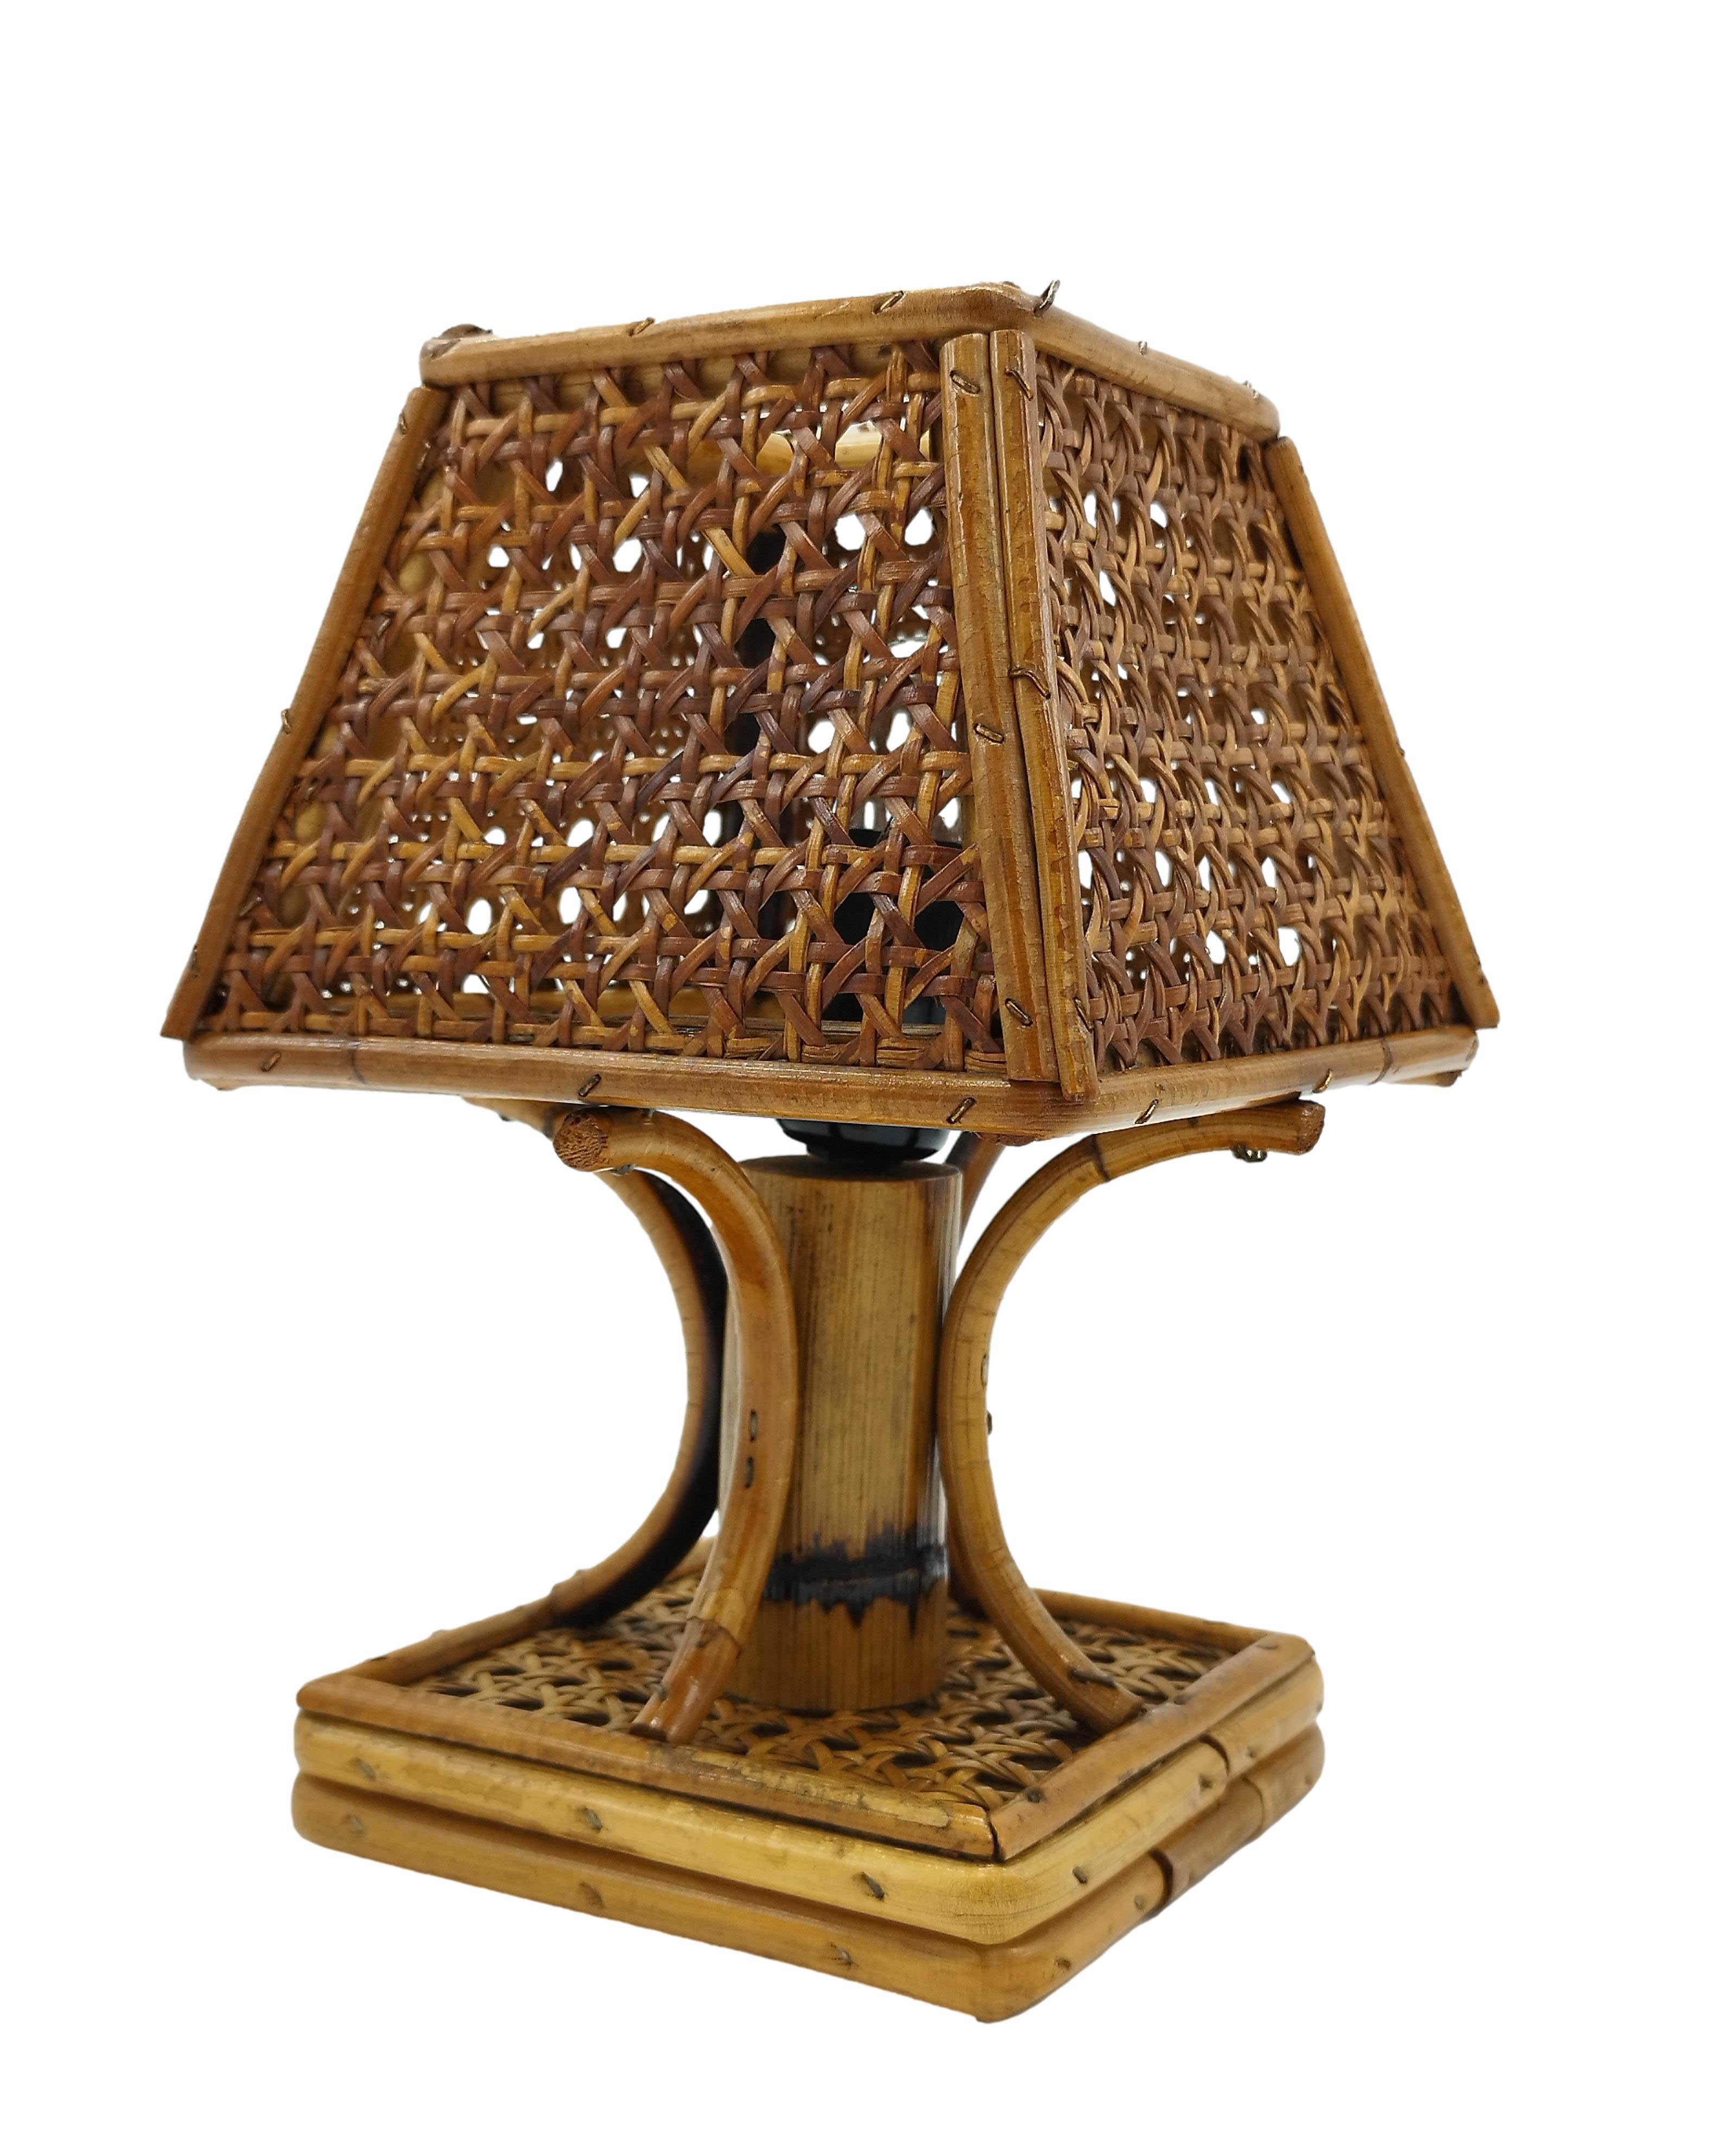 Lampe de chevet fabriquée à la main en Italie entre les années 1950 et 1960.
La structure de la lampe est faite de cannes de rotin courbées et l'abat-jour, fait de sangles de rotin, a la forme d'une pagode rappelant le style chinois